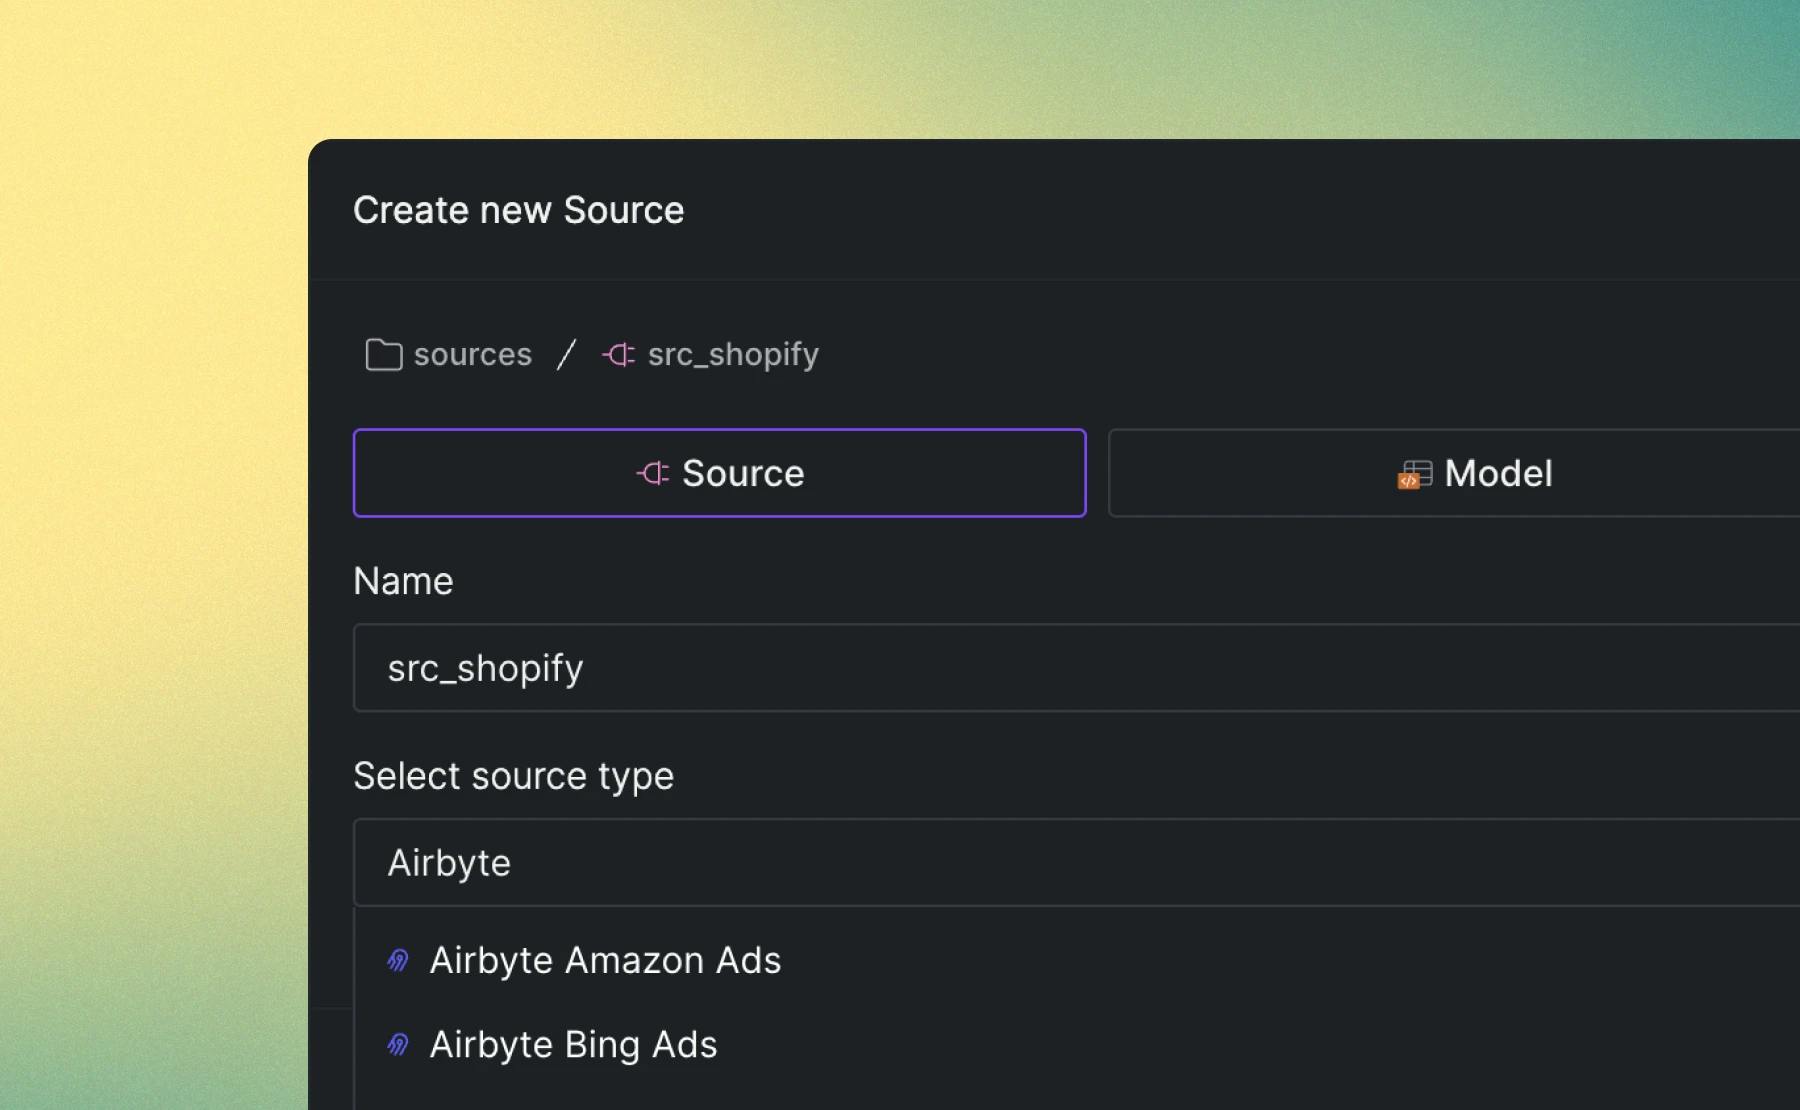 Add an Airbyte source asset.